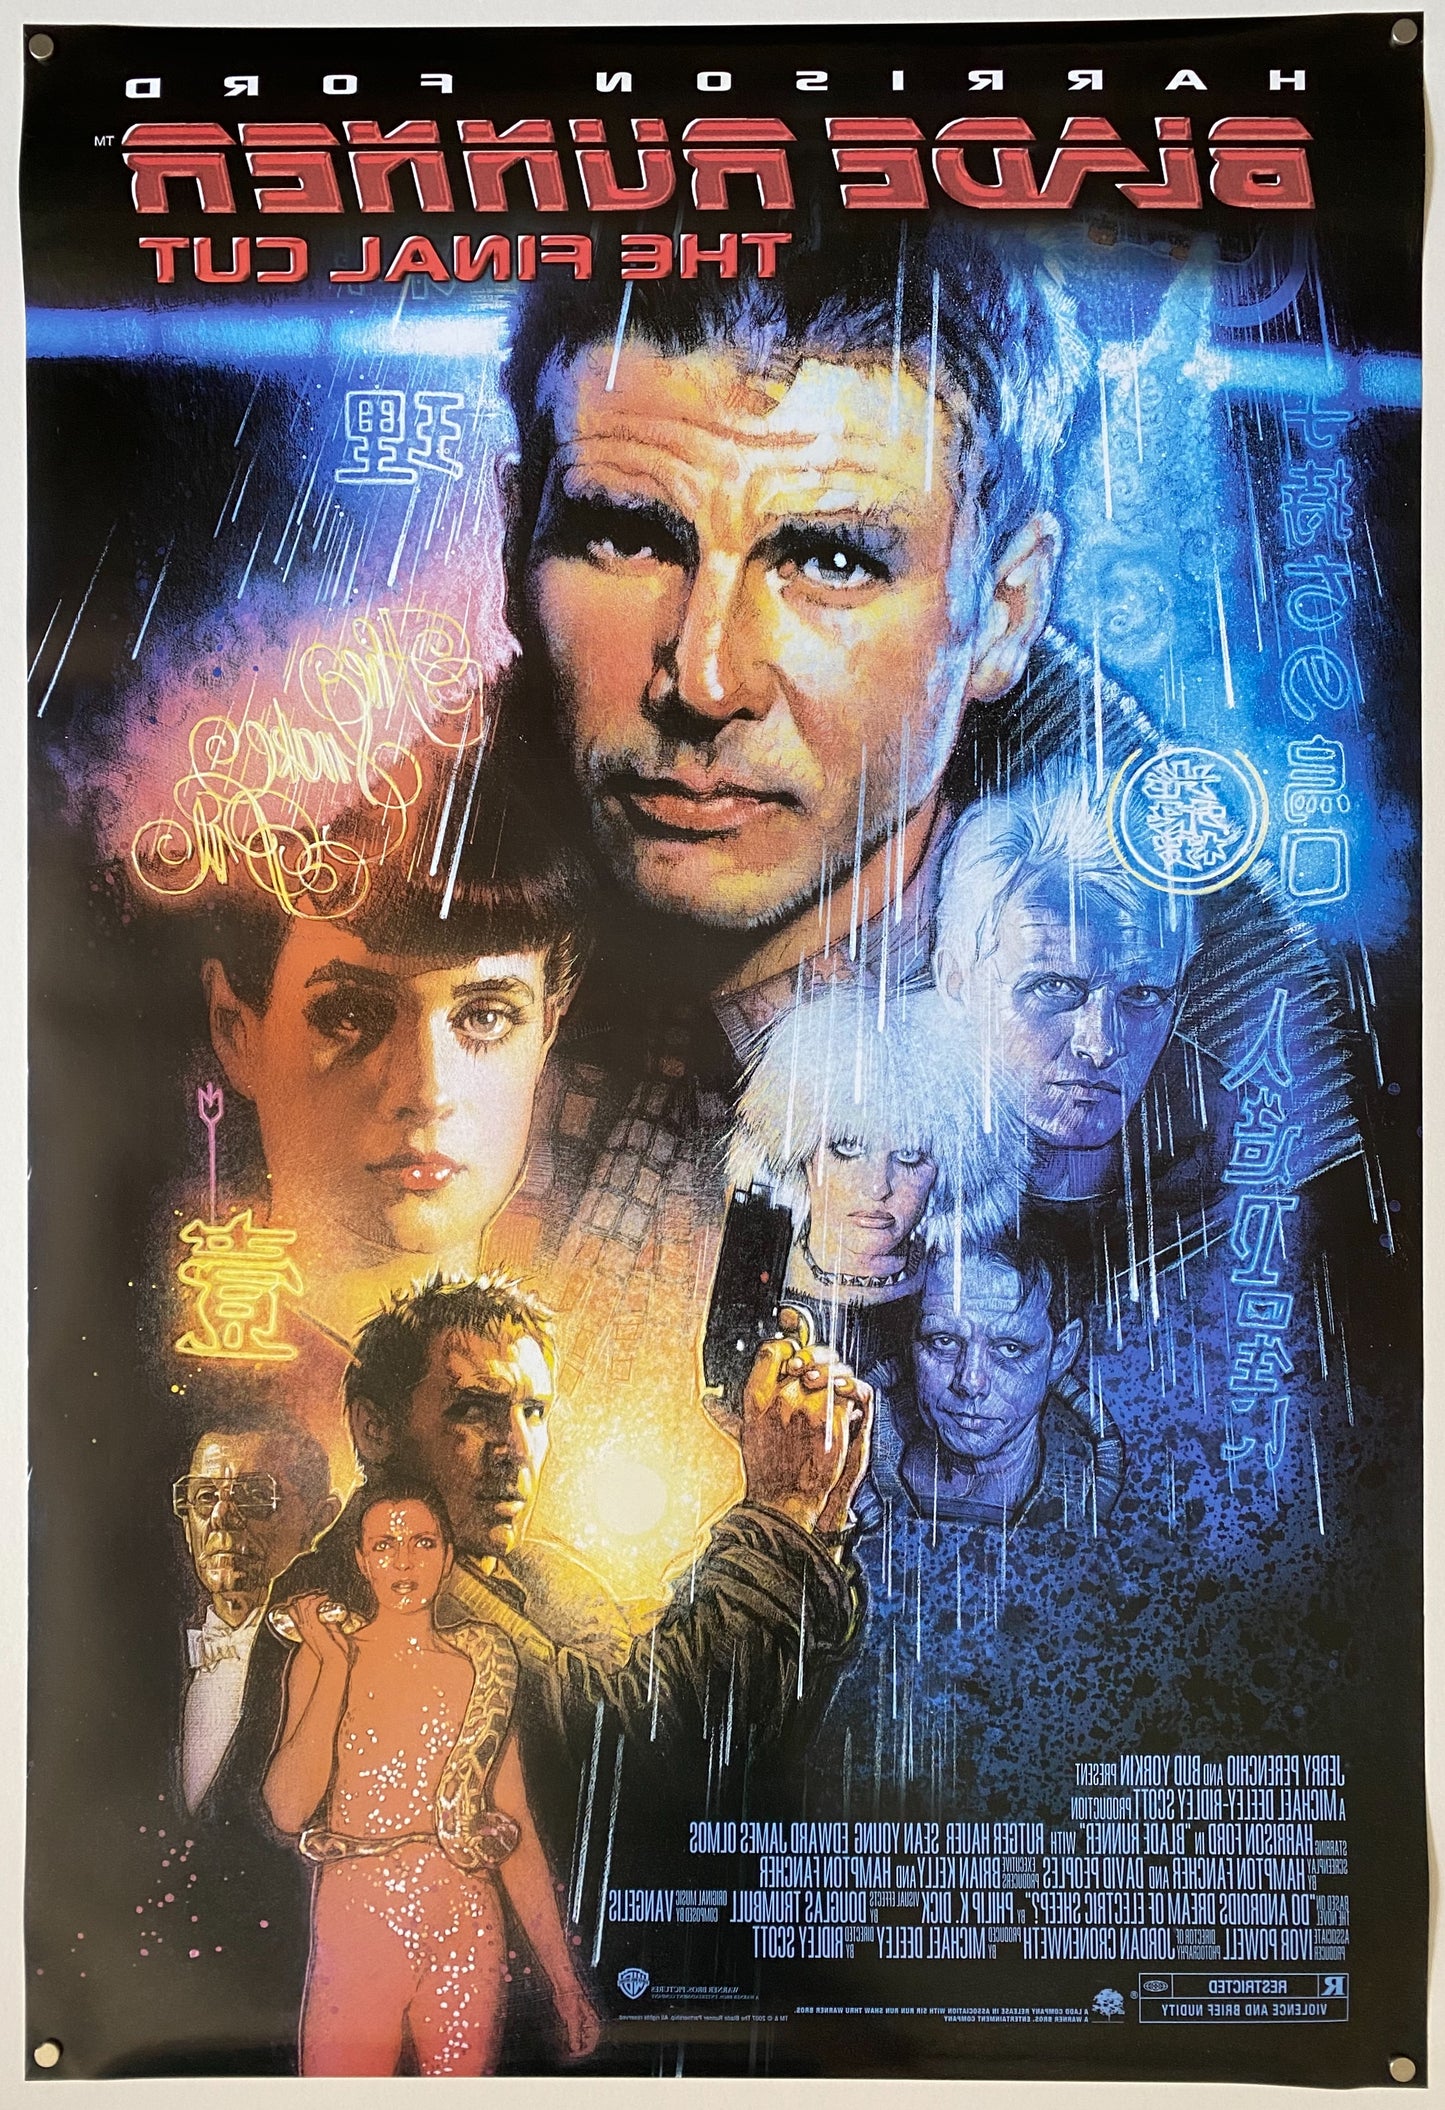 Blade Runner (The Final Cut)